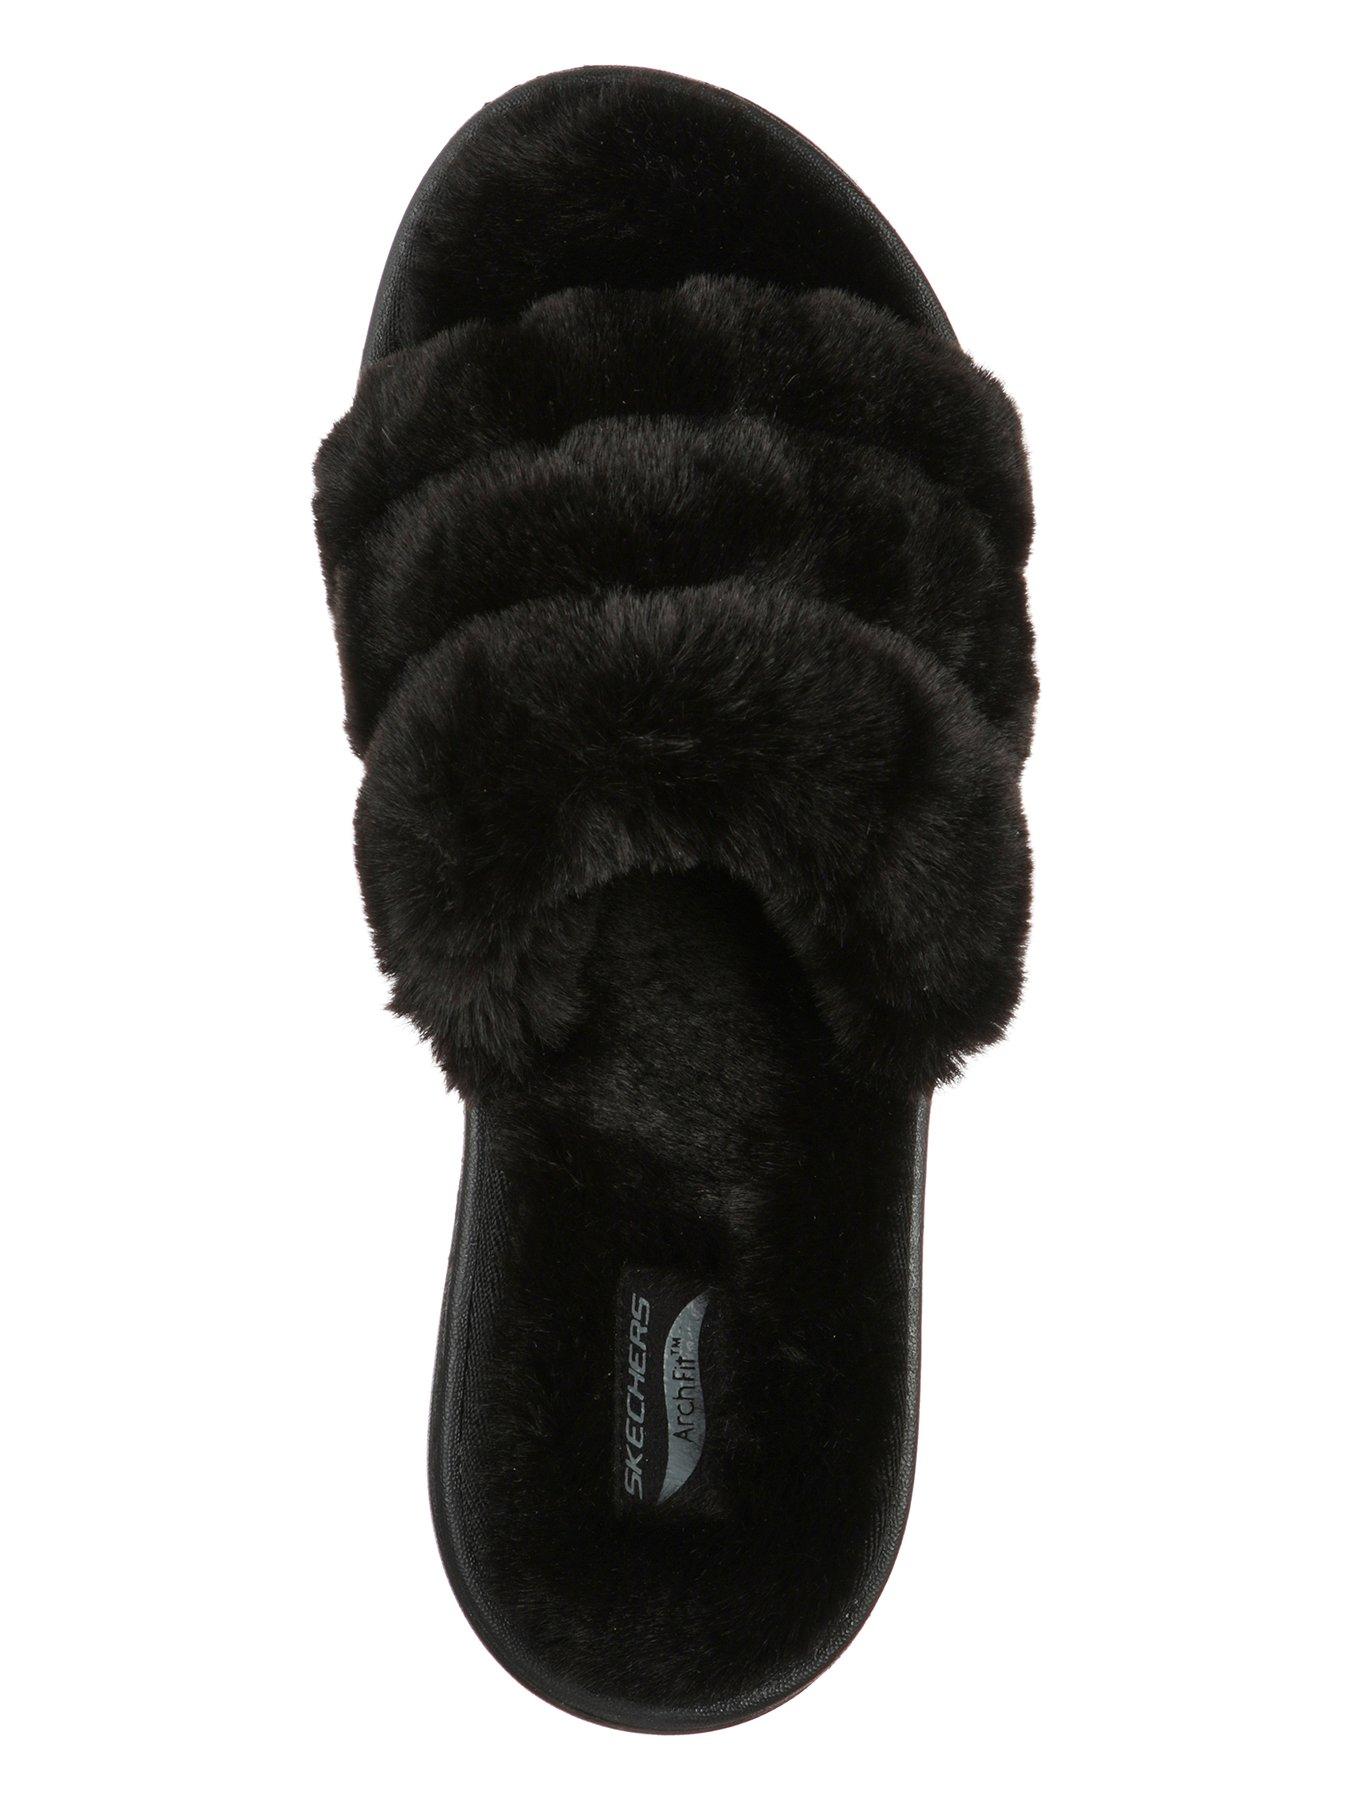 Nightwear & Loungewear Arch Fit Lounge Faux Fur Slippers